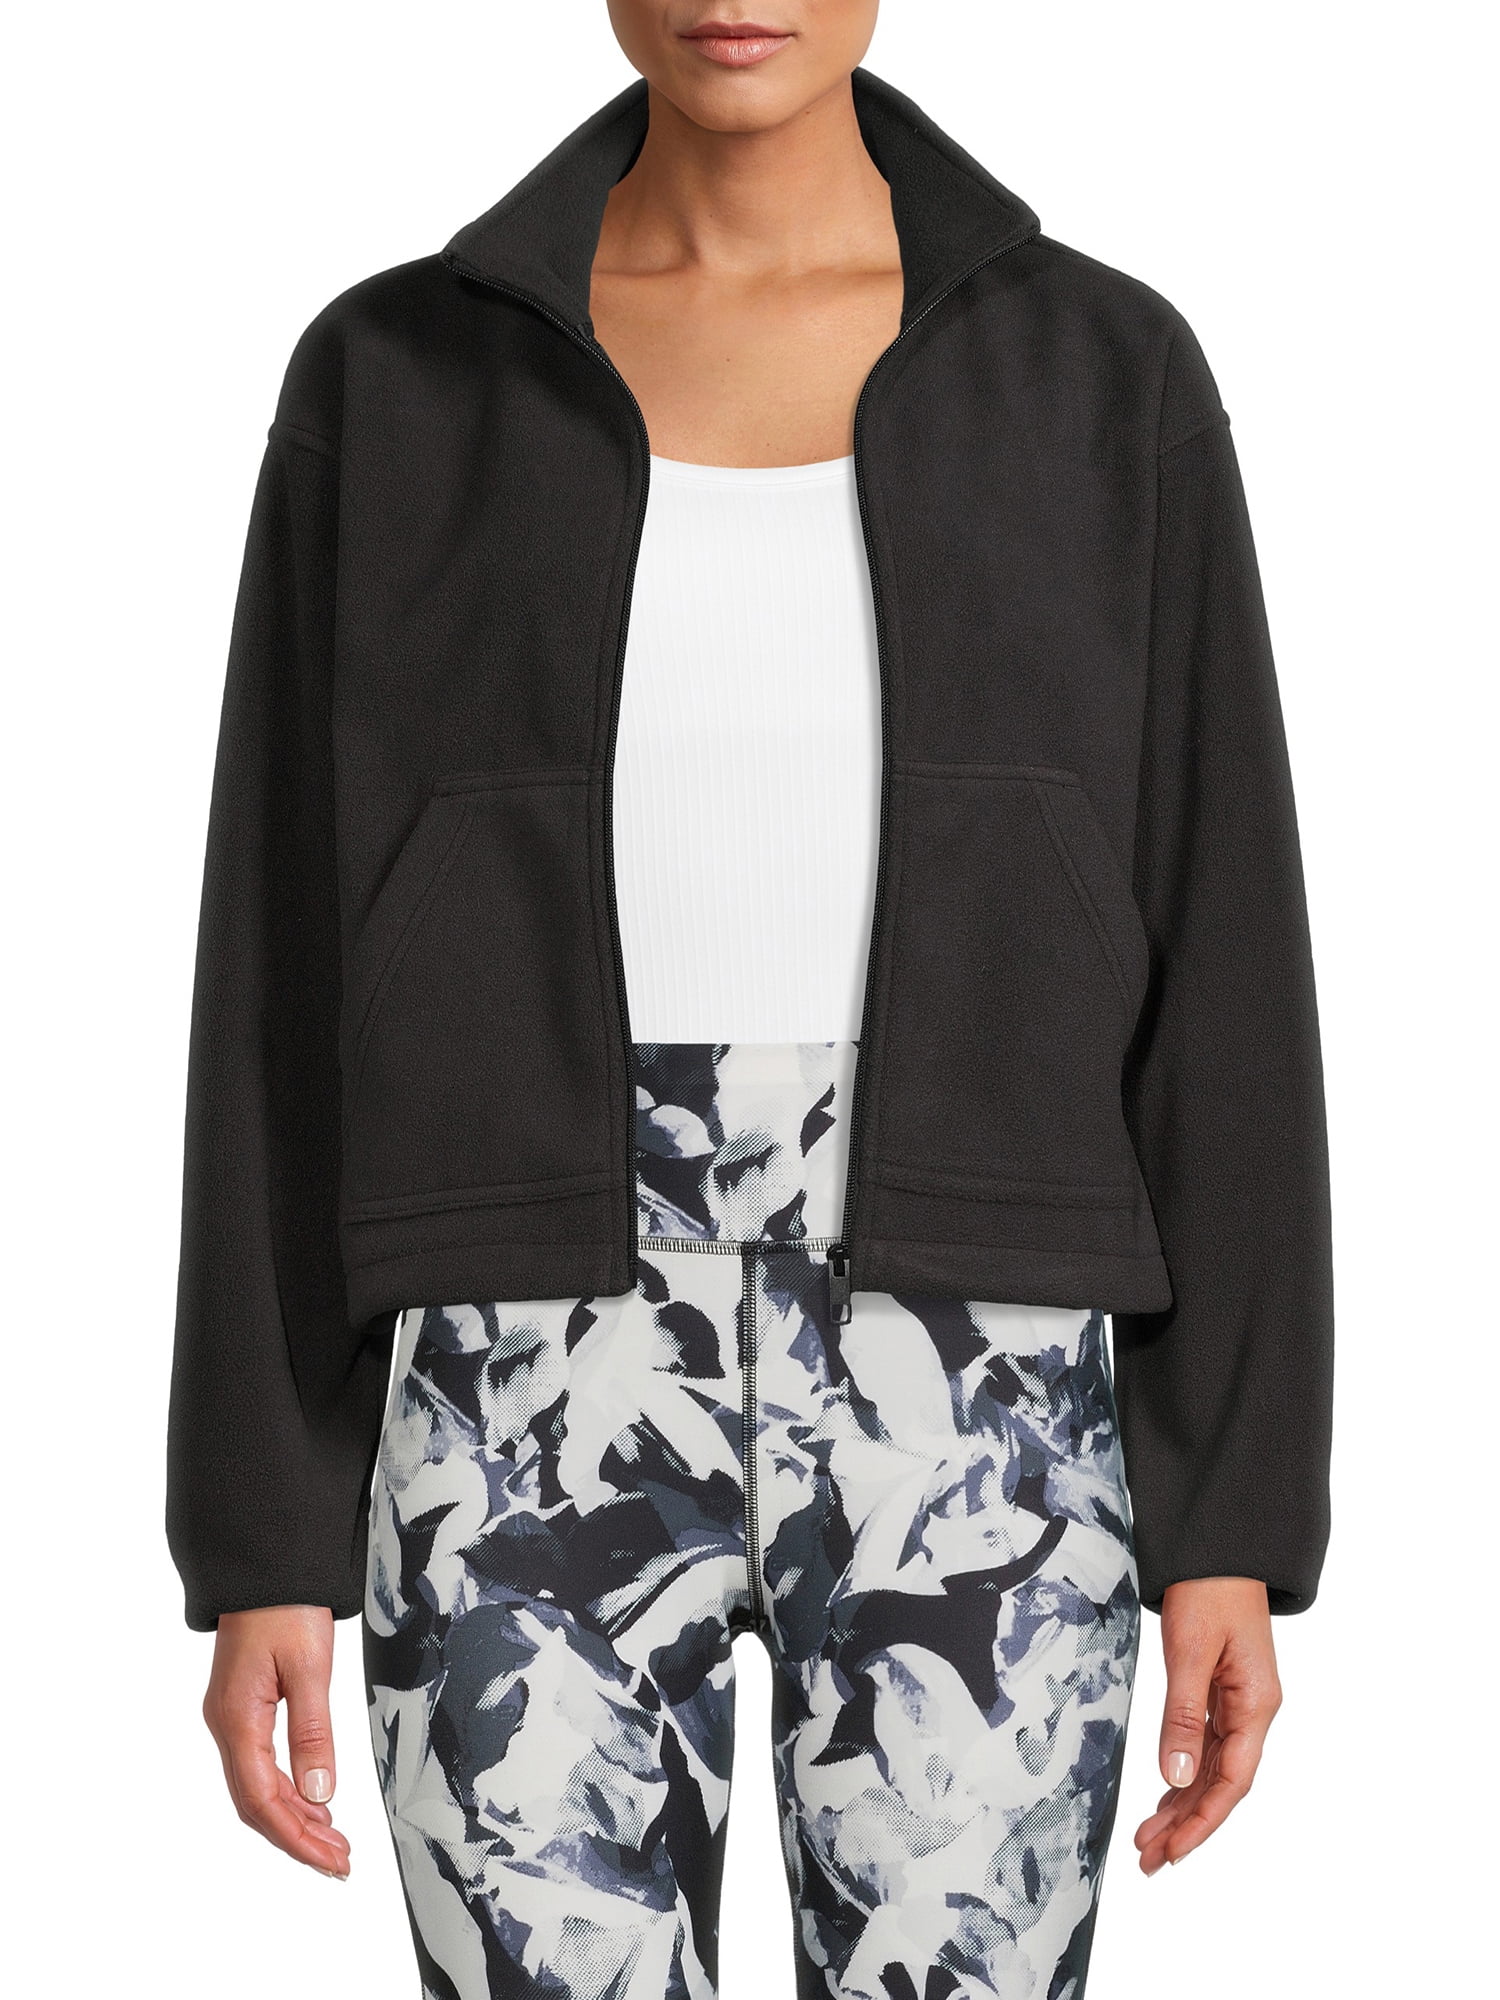 Avia Women's Full Zip Micro Fleece Jacket